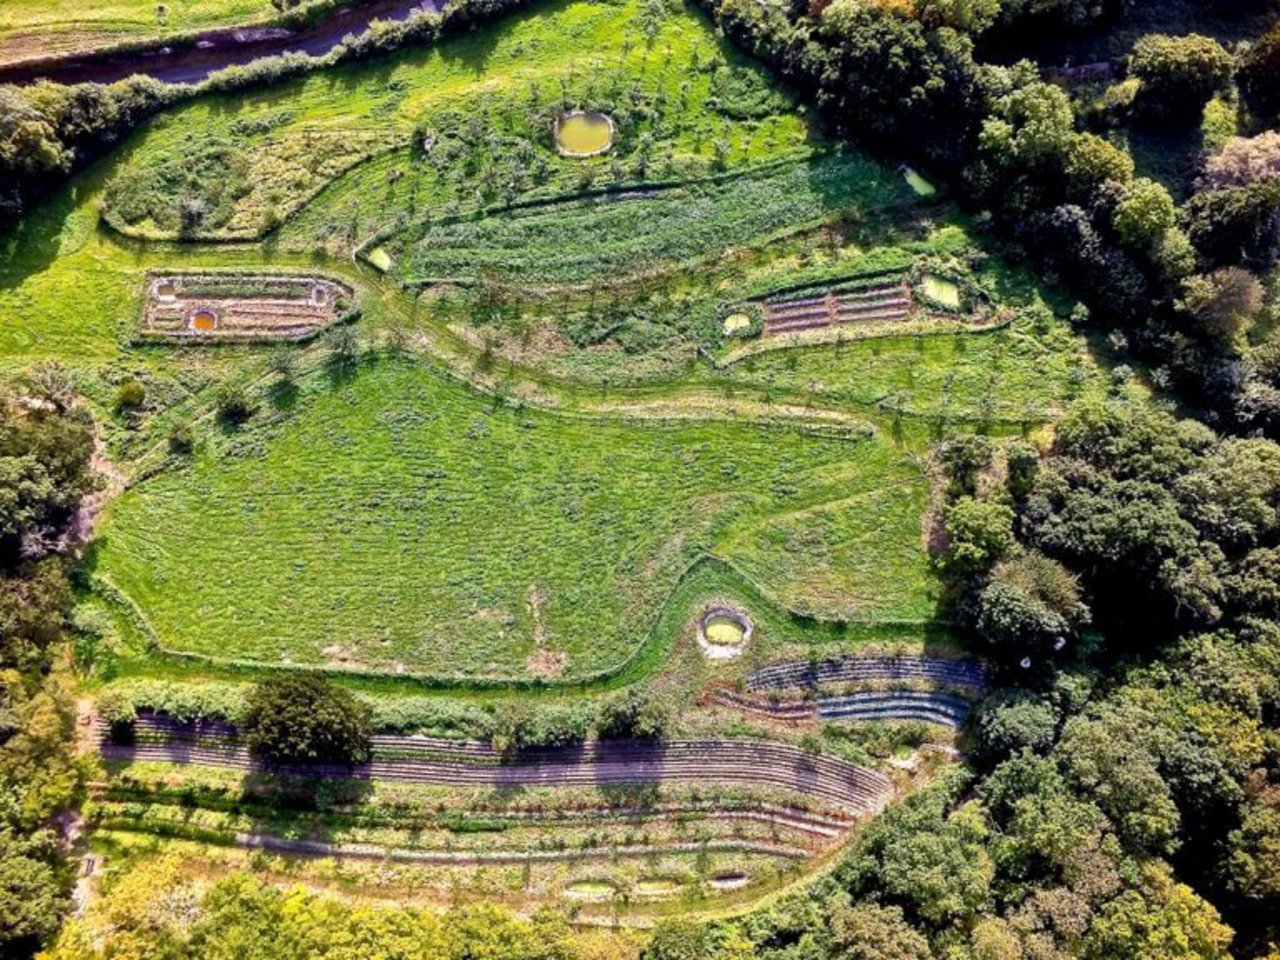 Luftbild der Ferme Bec Helloiun in Nordfrankreich. Typischerweise hält sich die Permakultur nicht an rechteckige Felder. (Bild fermedubec.com)